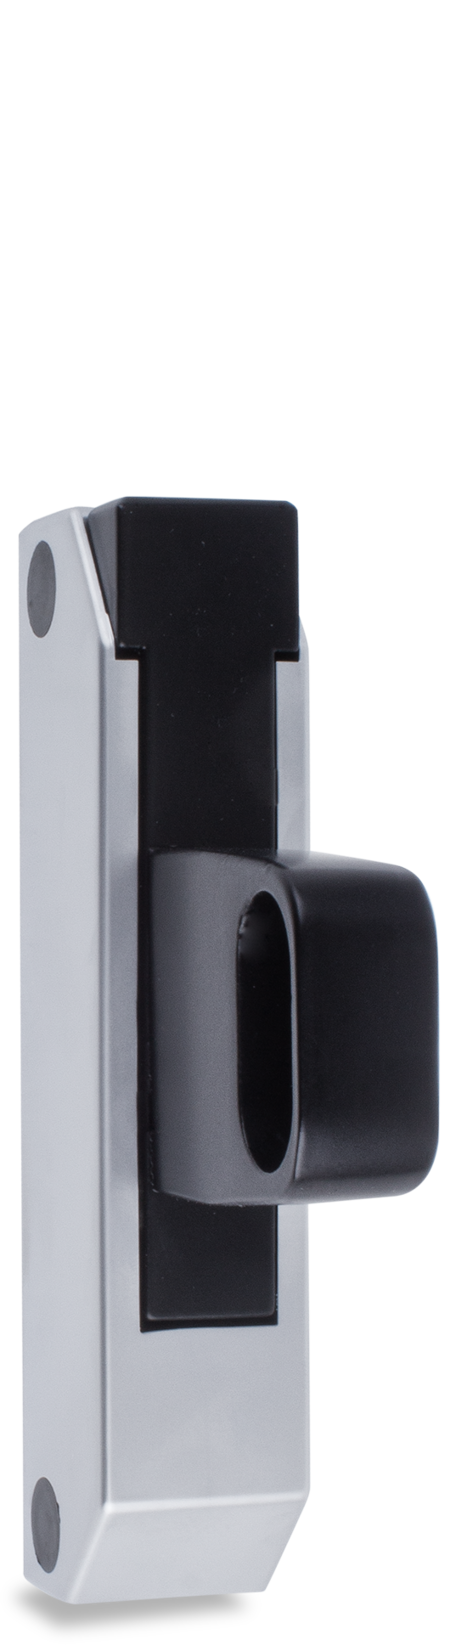 Schubladenverschluss Zink-Druckguss, EPS beschichtet schwarz RAL 9005, Kappe Kunststoff, matt verchromt, ohne Zylinder, seitliche Montage, Höhe Halterung 49 mm